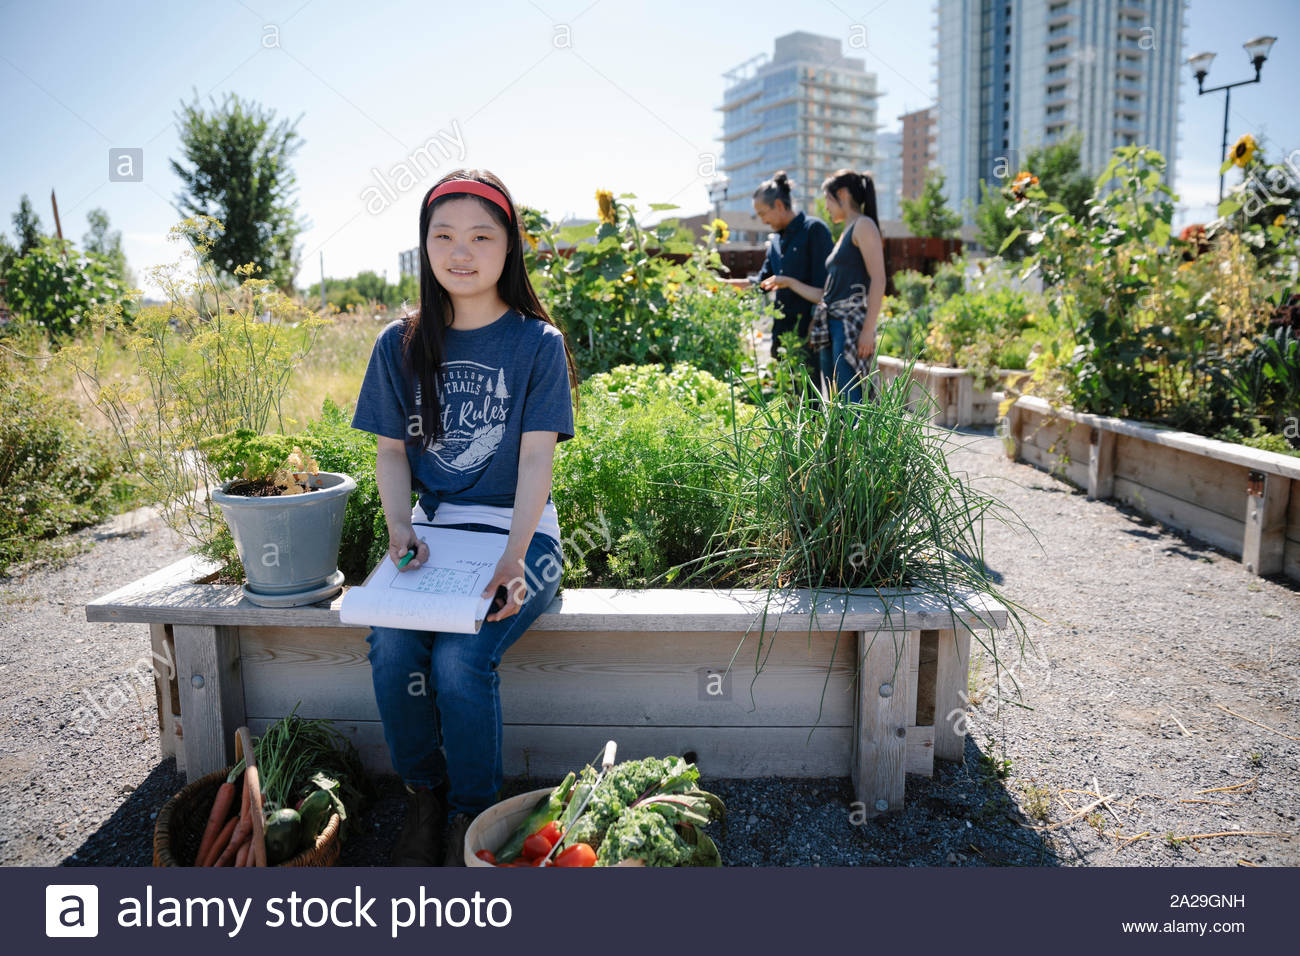 Retrato confía en mujer joven con síndrome de Down, planificación urbana, en el soleado jardín de comunidad Foto de stock